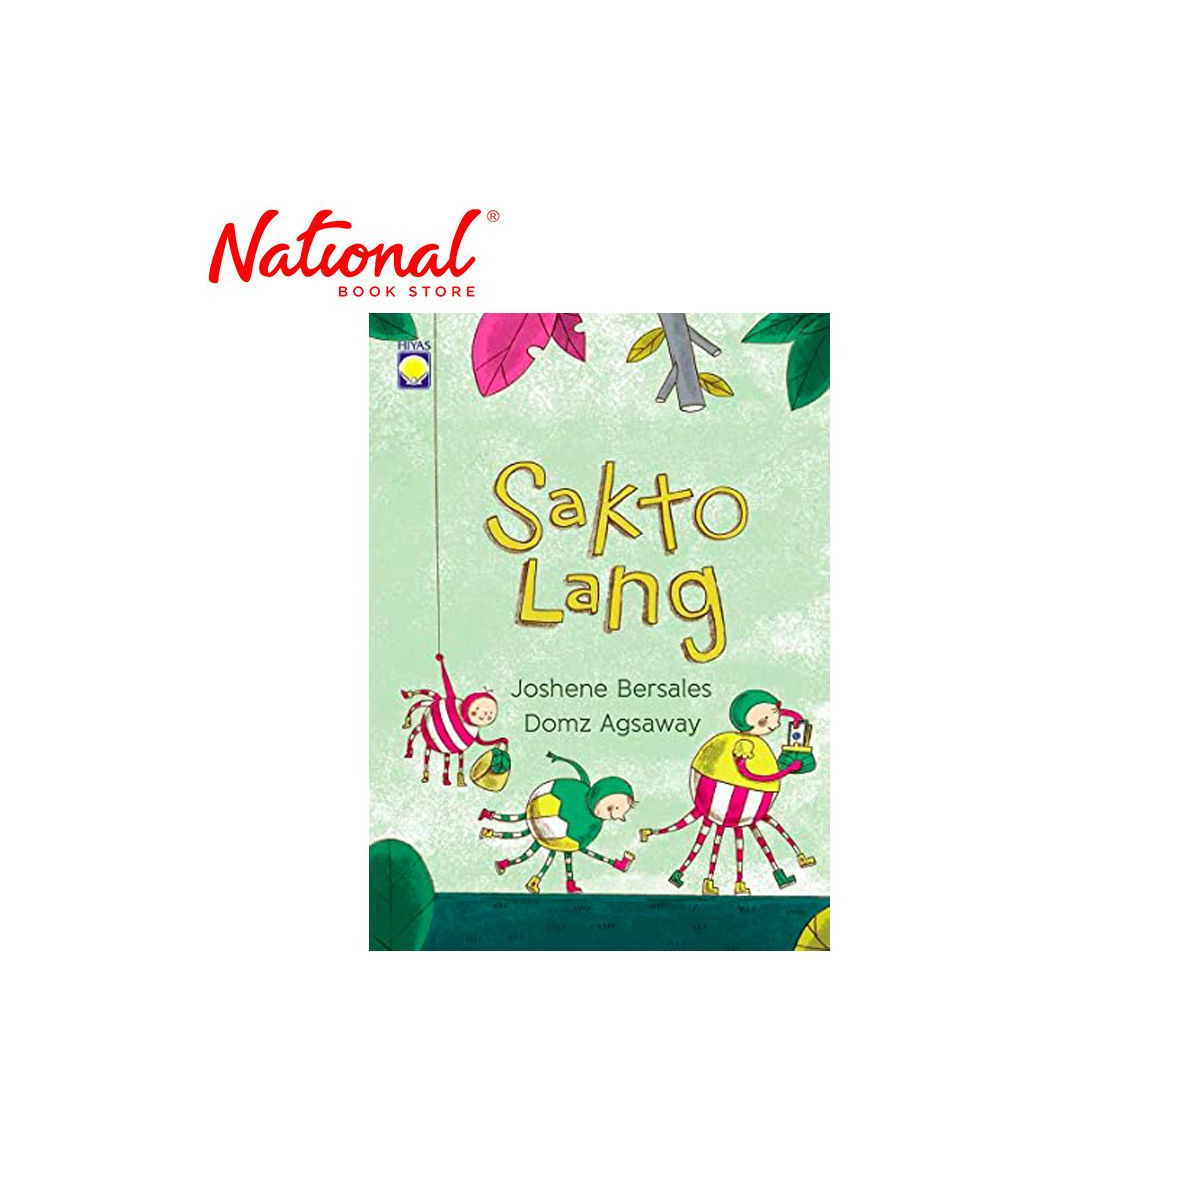 Sakto Lang Trade Paperback By Joshene Bersales - Storybooks for Kids